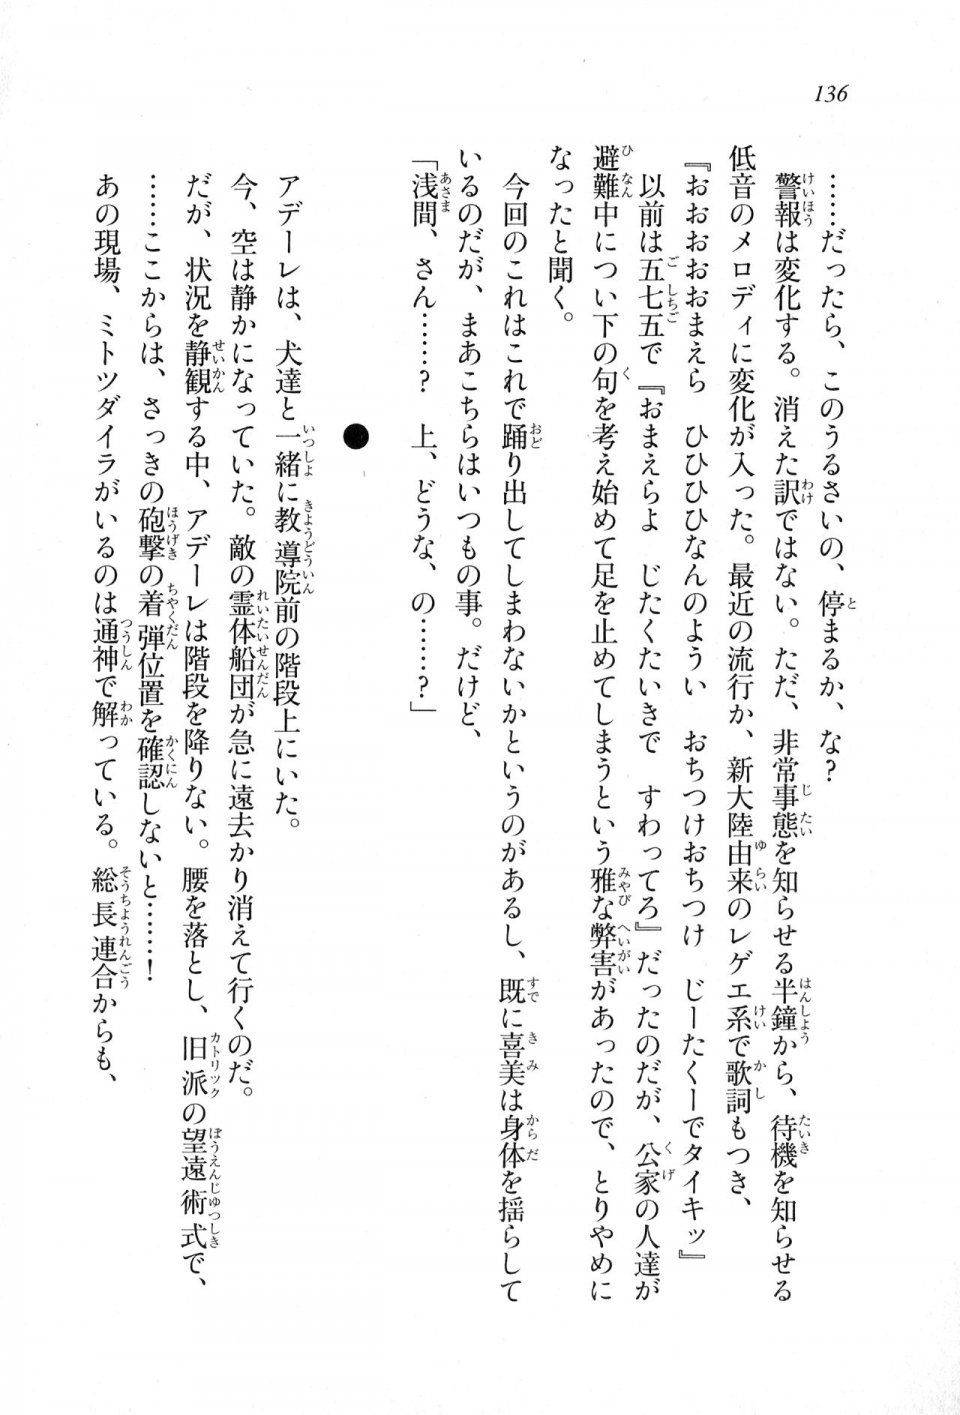 Kyoukai Senjou no Horizon LN Sidestory Vol 1 - Photo #134